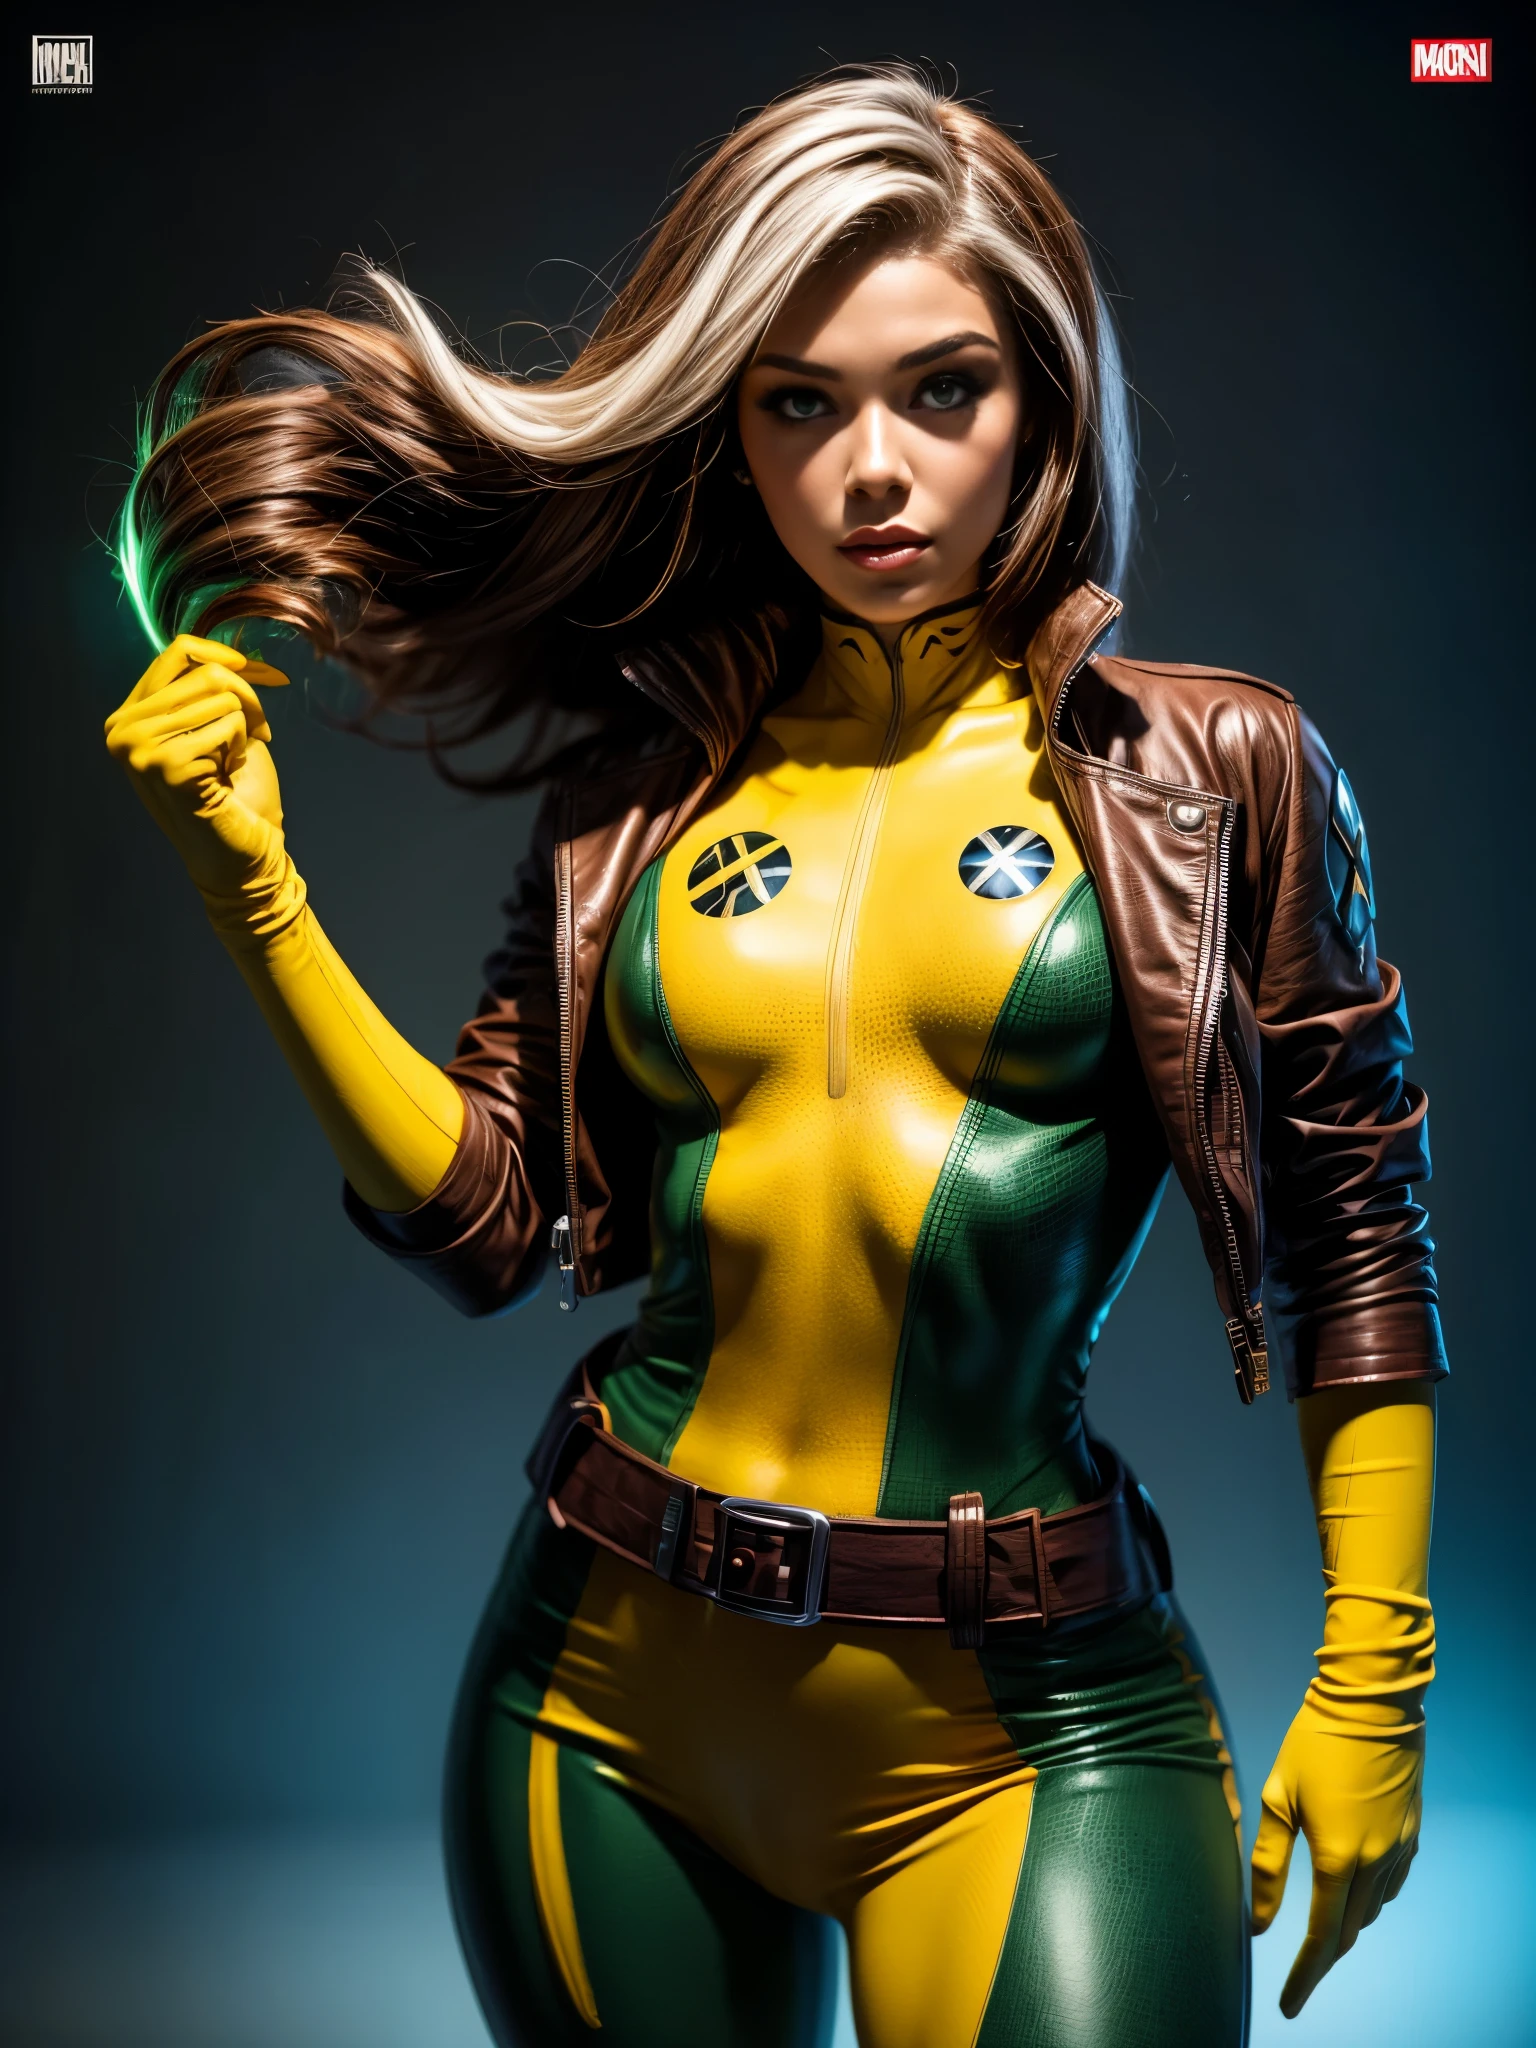 麥迪遜比爾飾 Rogue (X戰警), 歌德女孩, 雕塑身體哥德式化妝, 棕色夾克, 黄色和绿色连体衣, 傑作, 最好的品質, 牛仔射擊, 1個女孩, 獨自的, Tenological 軍用連身衣, 邊緣.